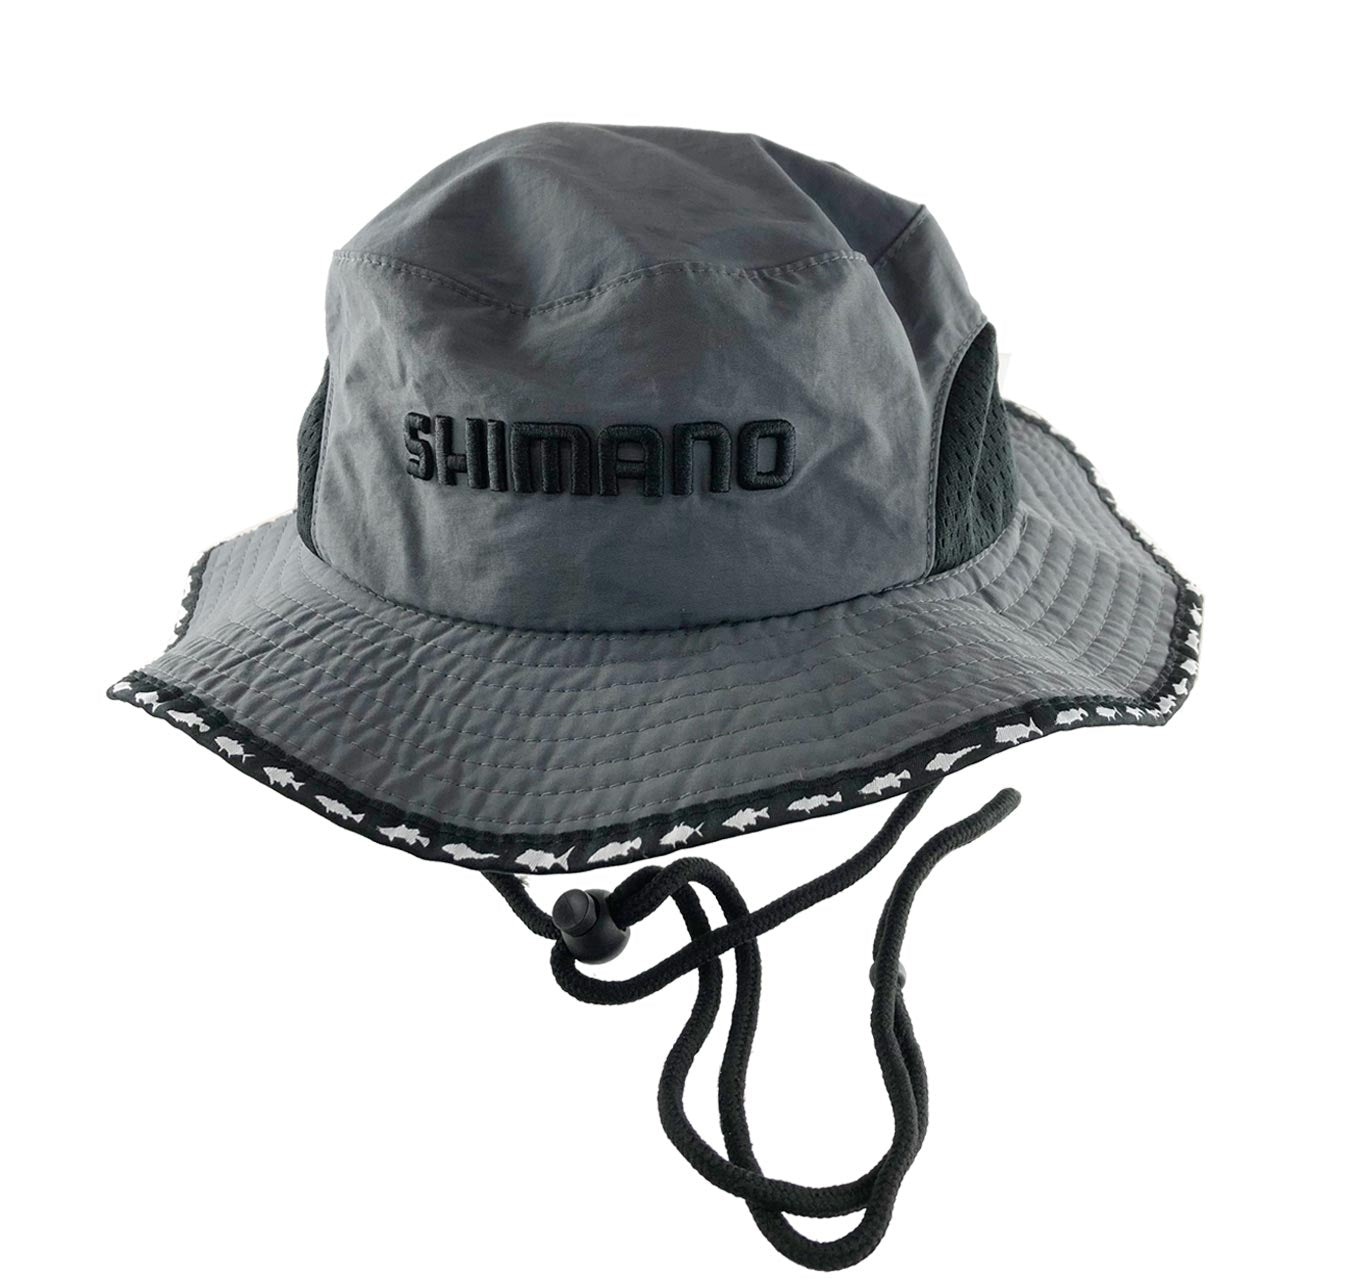 Shimano Black & White Flat Cap, Fergo's Tackle World